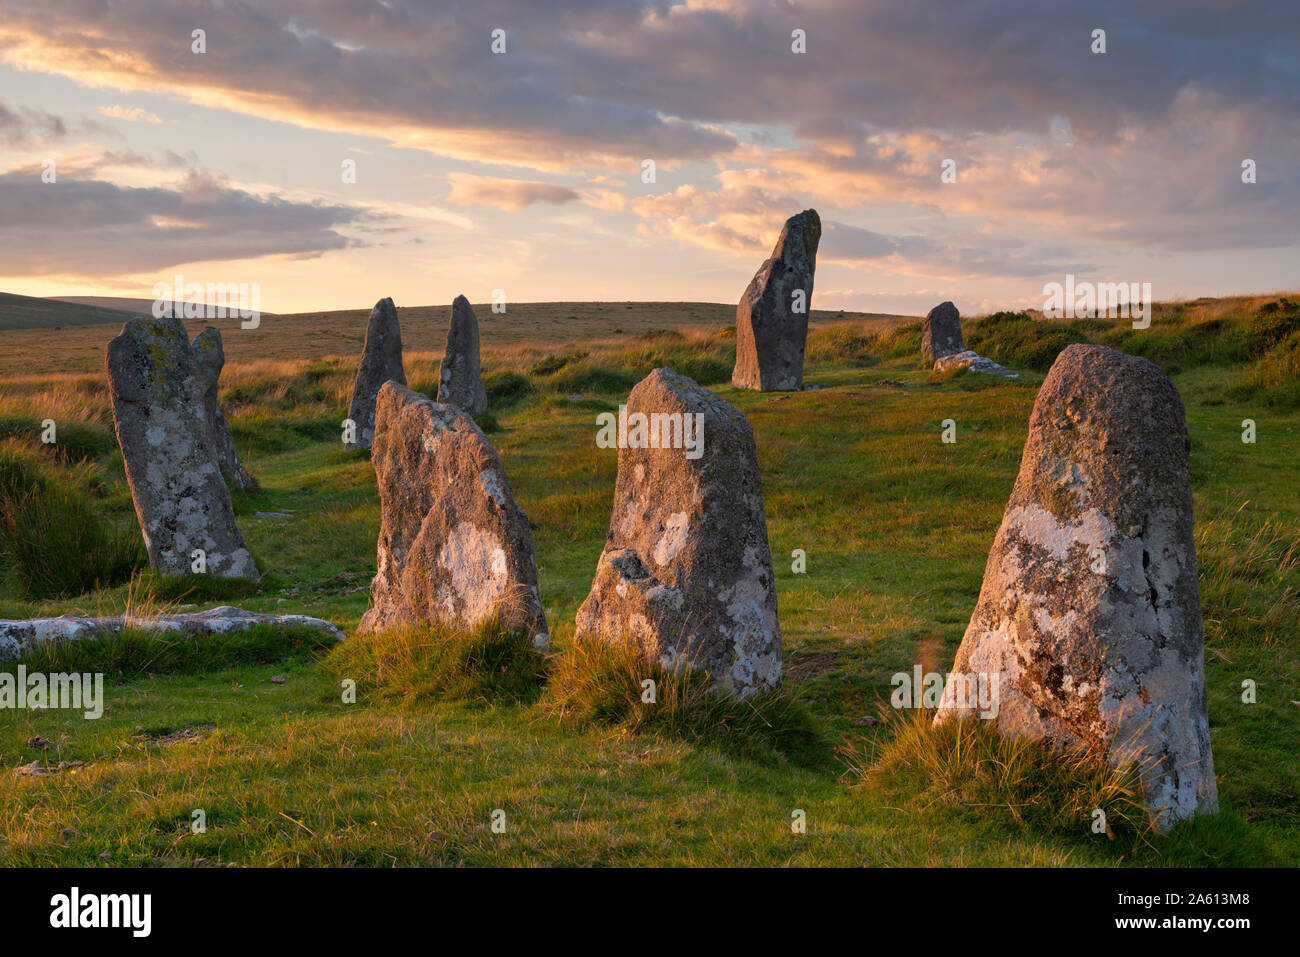 Scorhill cercle de pierres mégalithiques dans le Dartmoor National Park, Devon, Angleterre, Royaume-Uni, Europe Banque D'Images